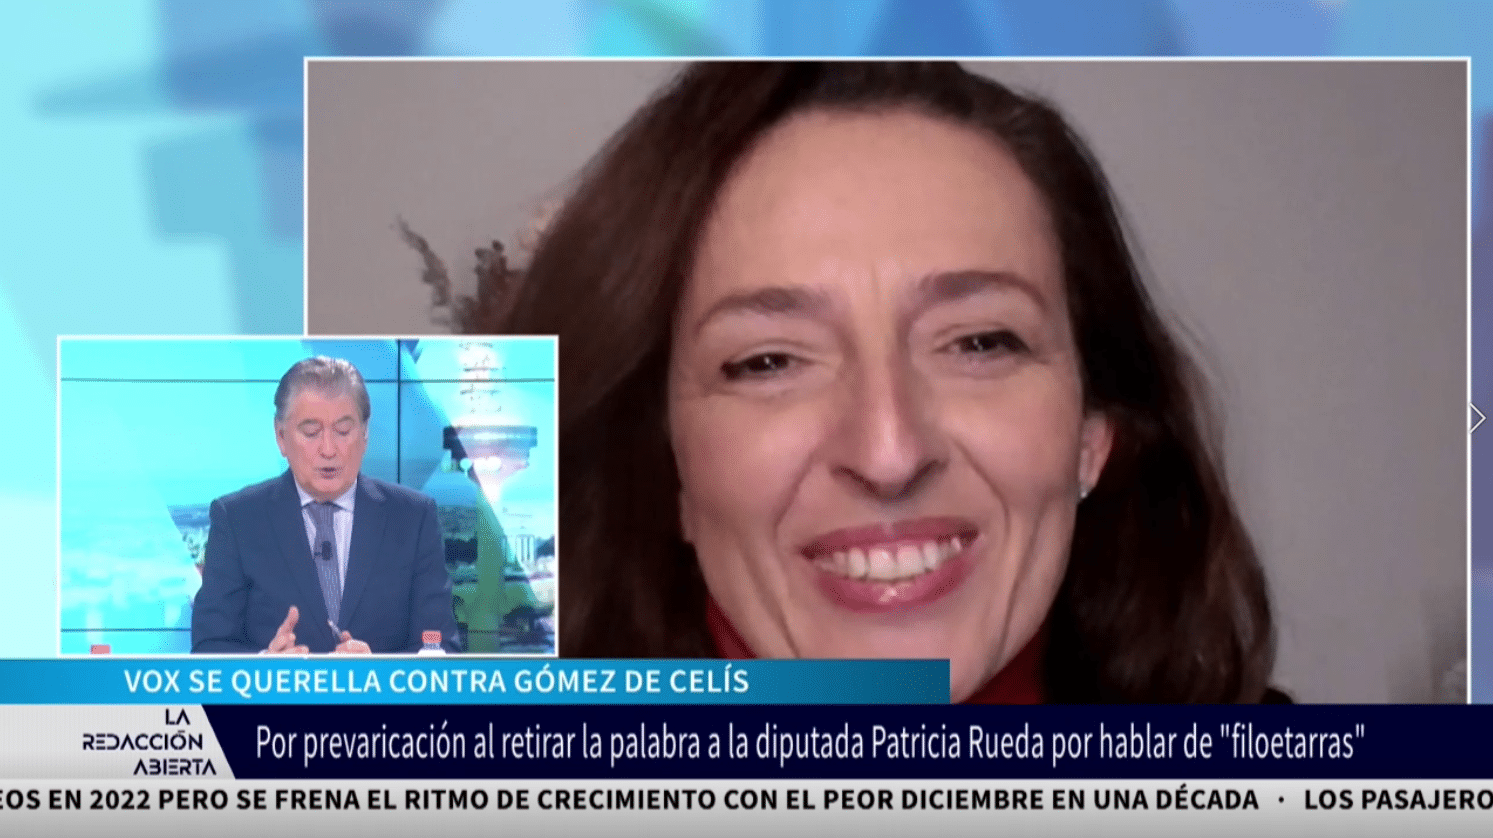 Entrevista a Marta Castro: VOX SE QUERELLA CONTRA GÓMEZ DE CELÍS